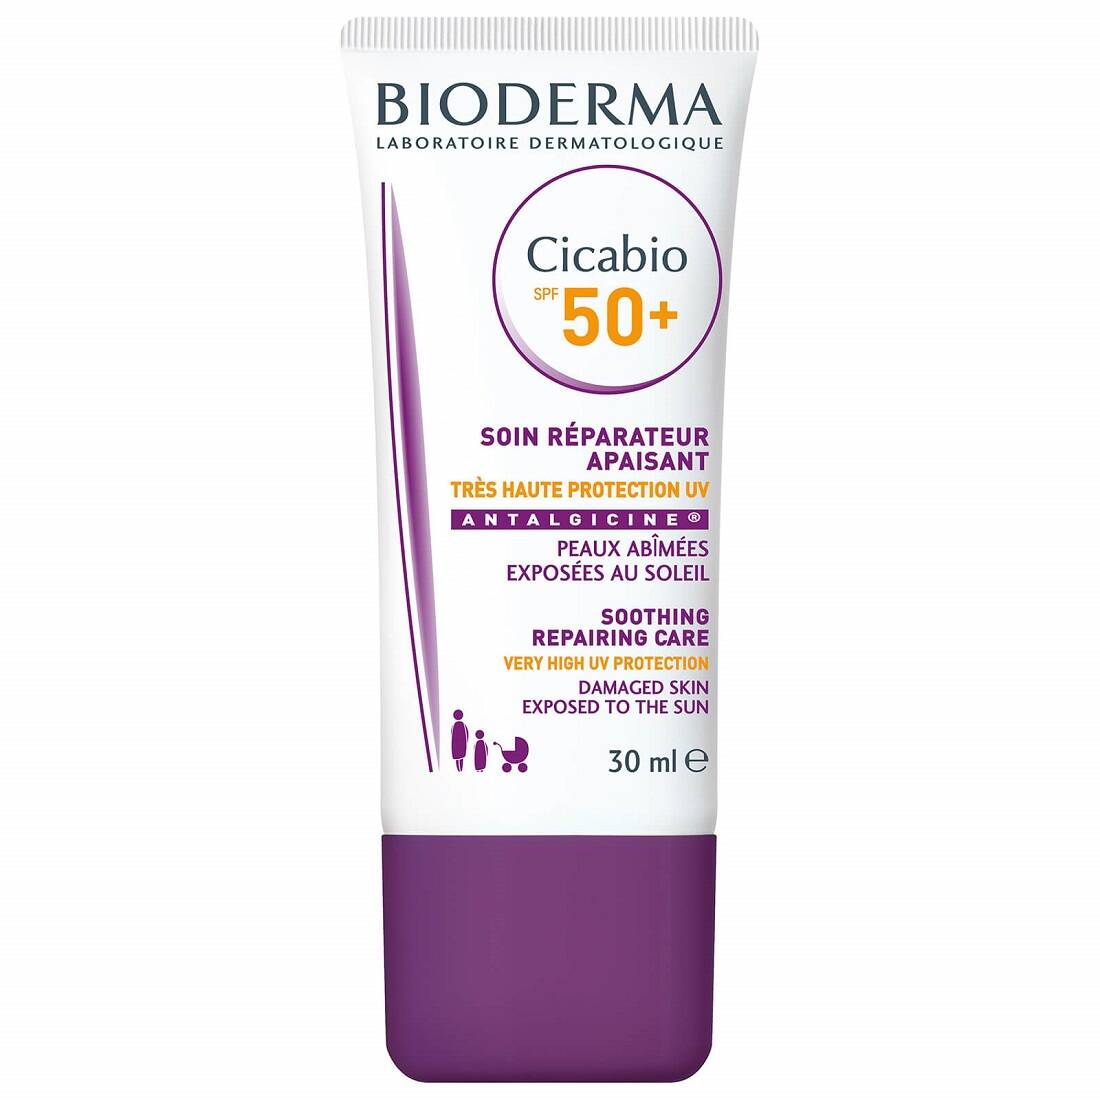 کرم ضد آفتاب سیکابیو Spf50+ بایودرما اصل فرانسه - ضدآفتاب ترمیم کننده cicabio بیودرما مناسب پوست های حساس کودک تا بزرگسال - BIODERMA CICABIO Cream SPF50+ -30ml